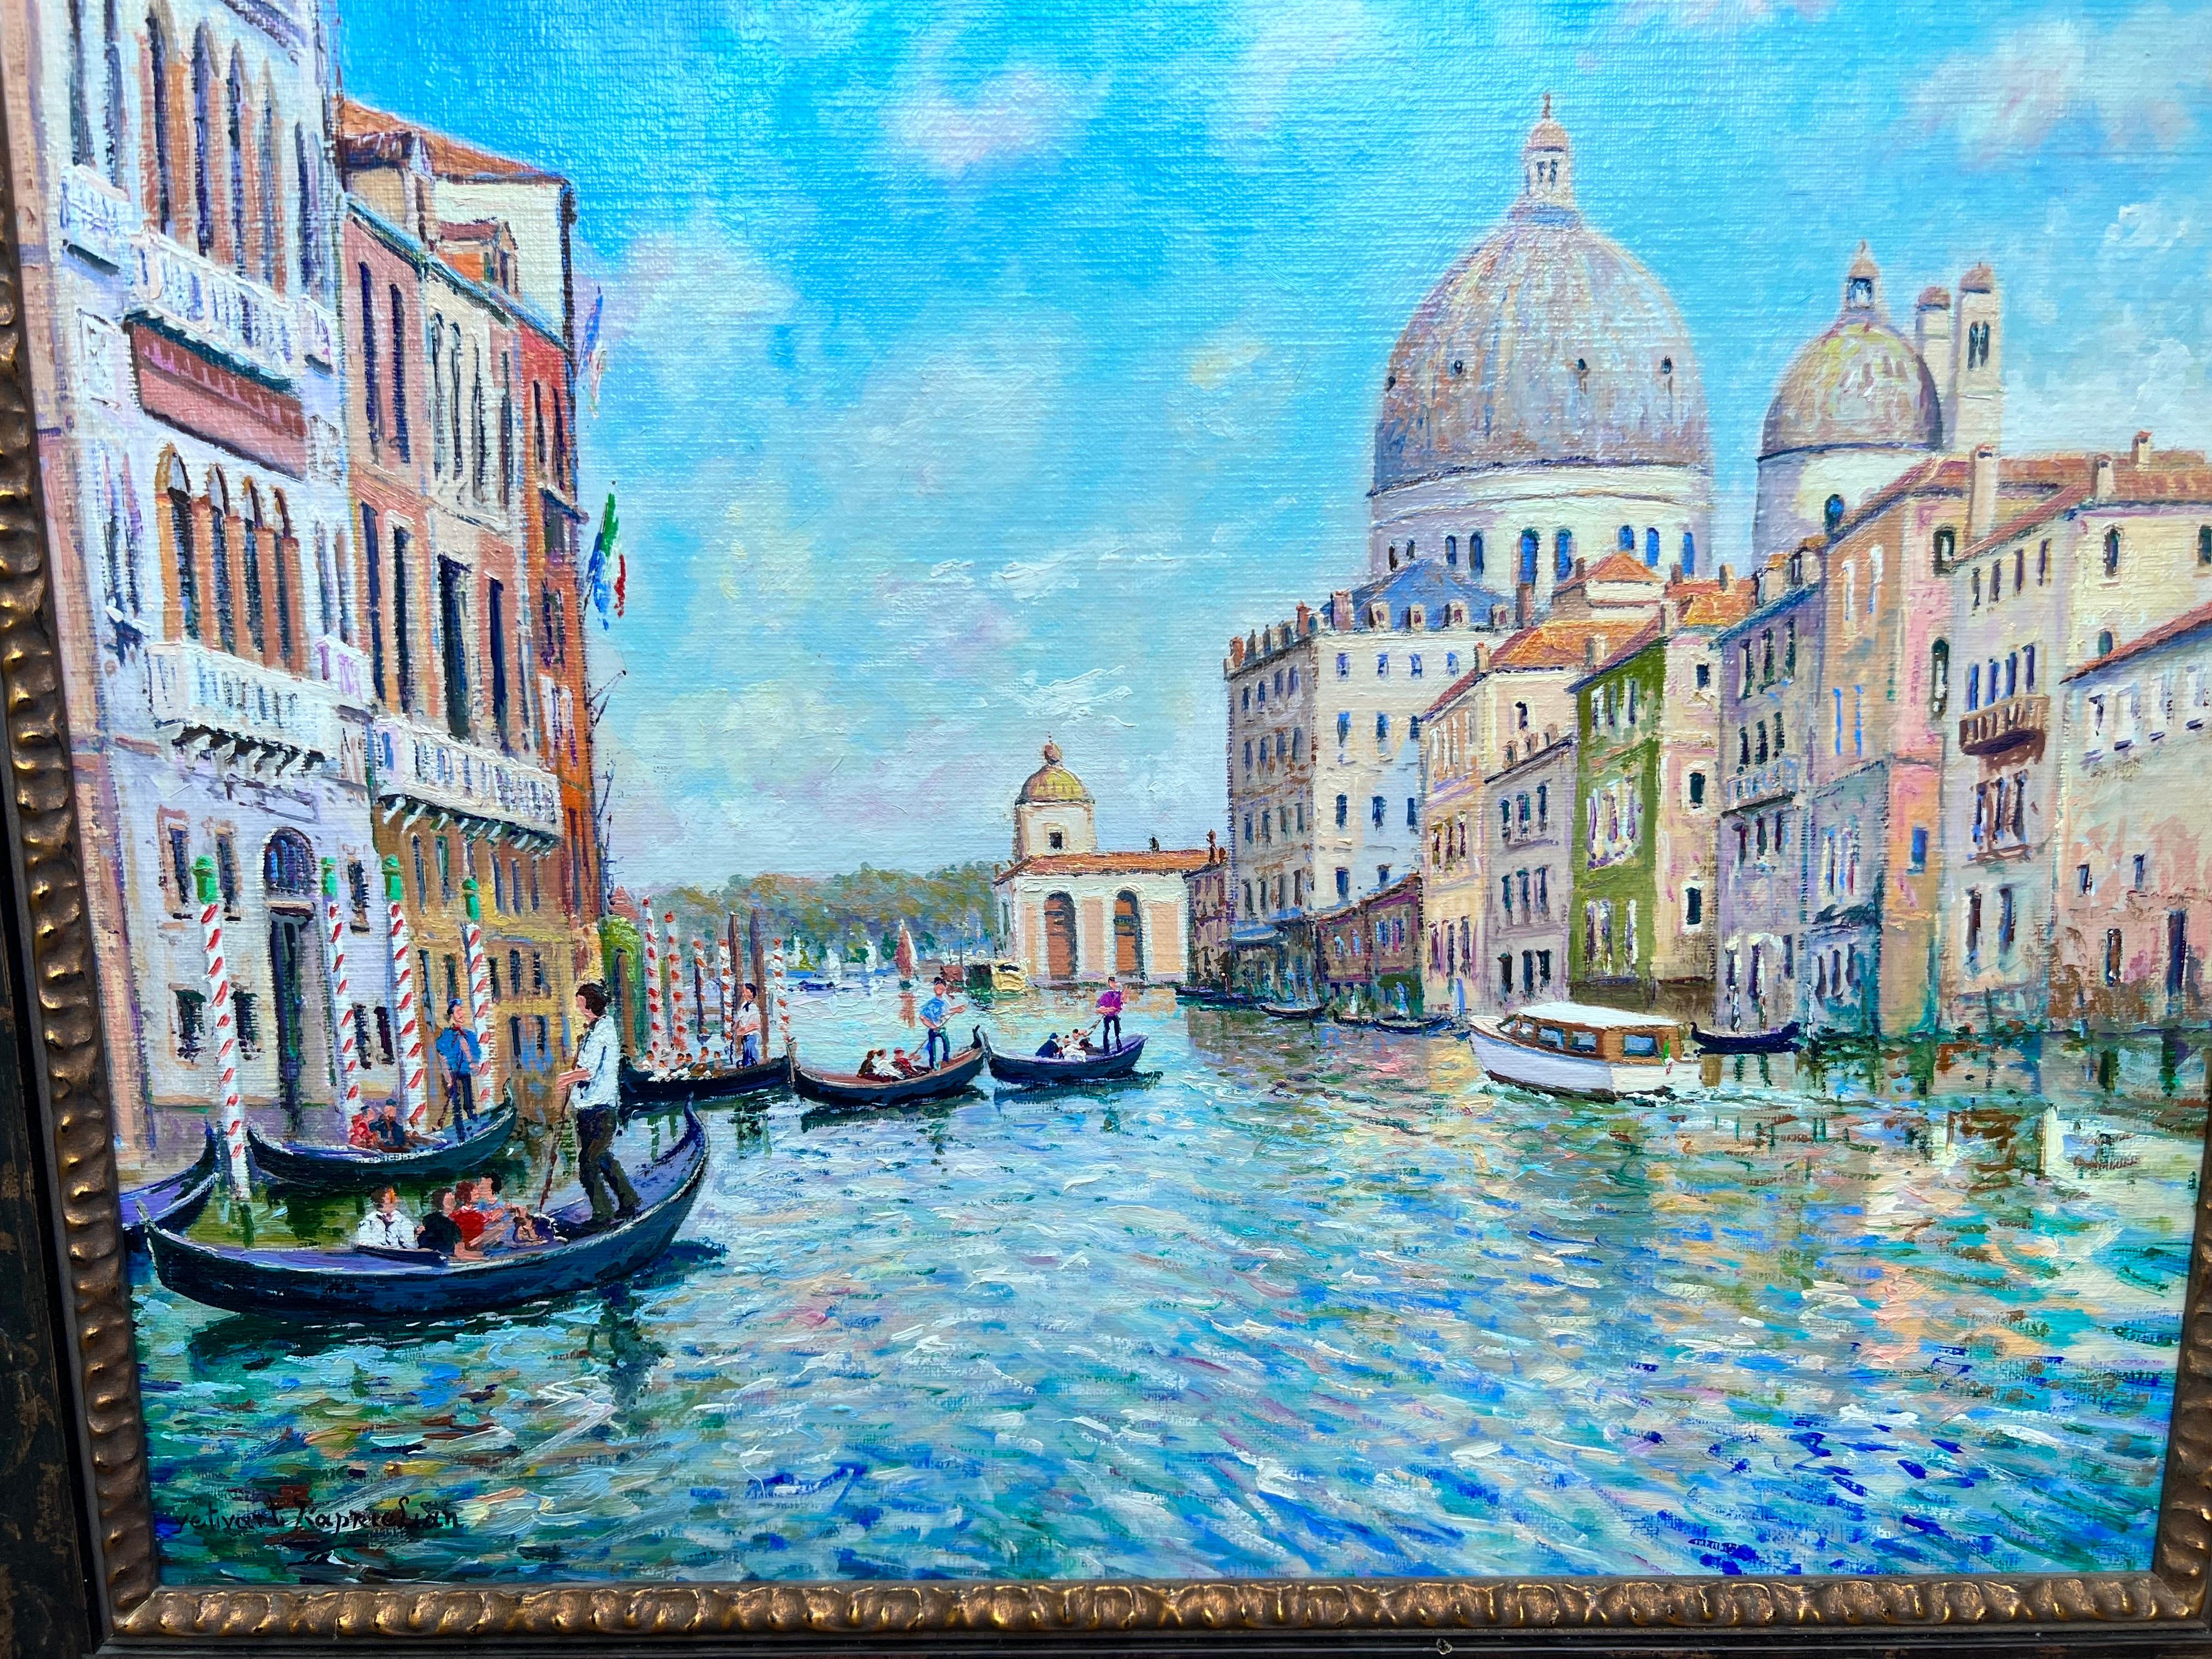 Der große Kanal in Venise. – Painting von Yetvart Kaprielian